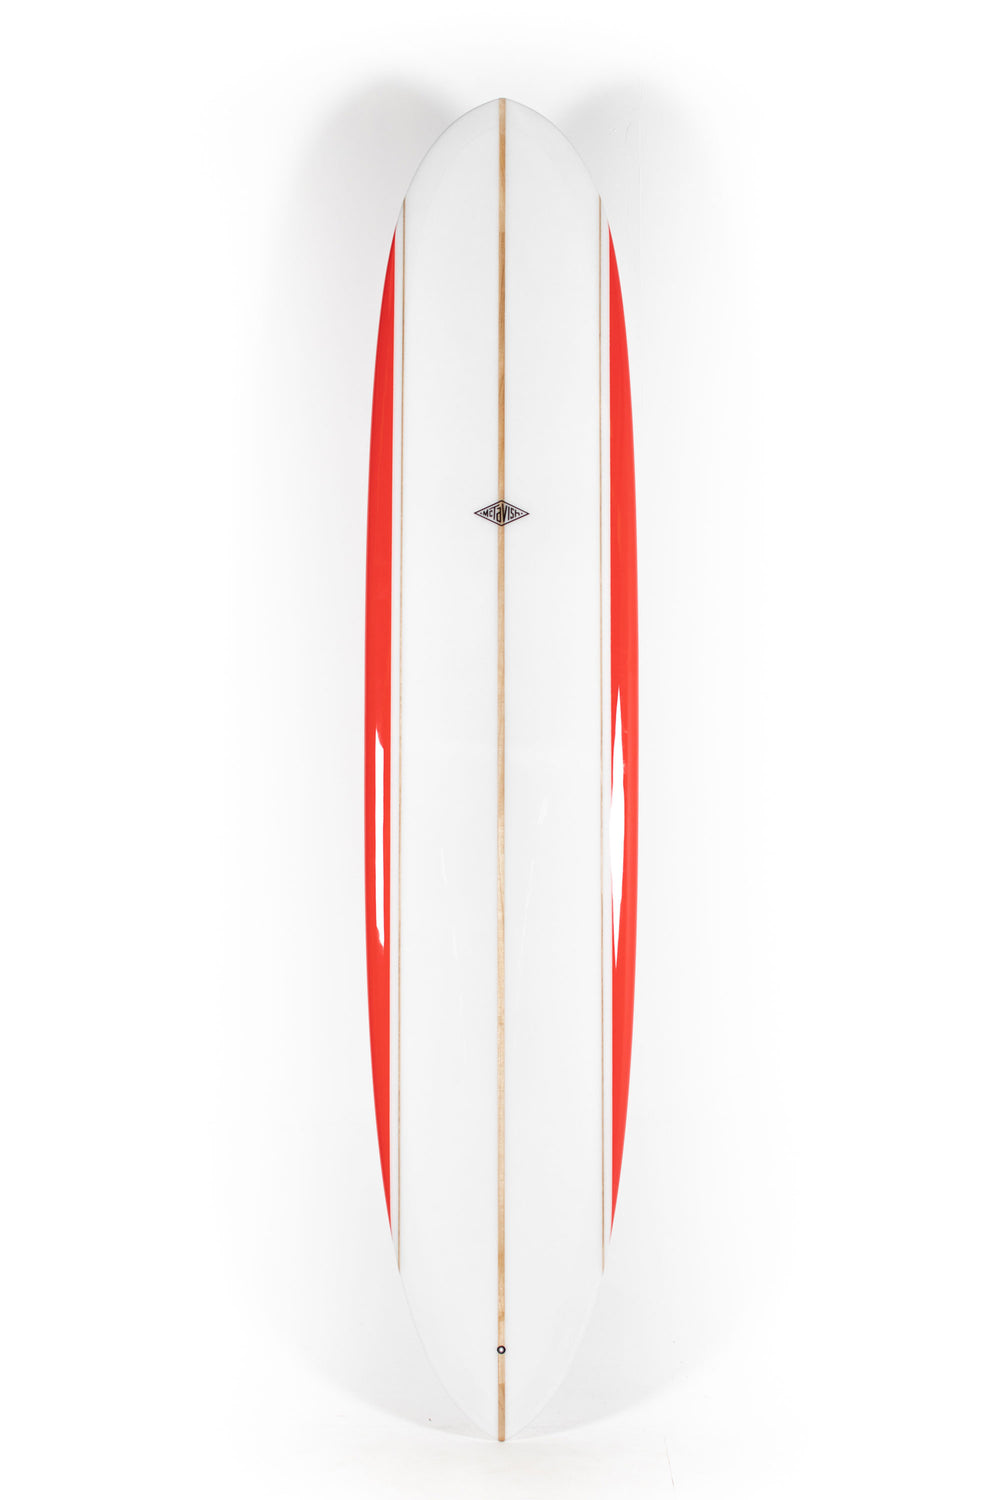 Pukas Surf Shop - McTavish Surfboard - PINNACLE by Bob McTavish - 9'4